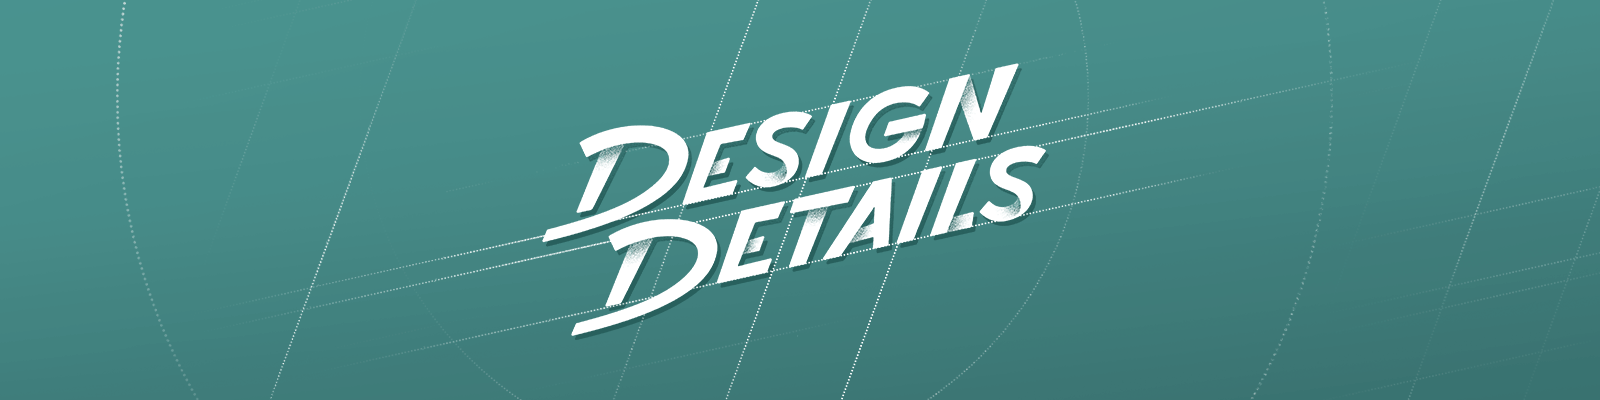 Design Details logo